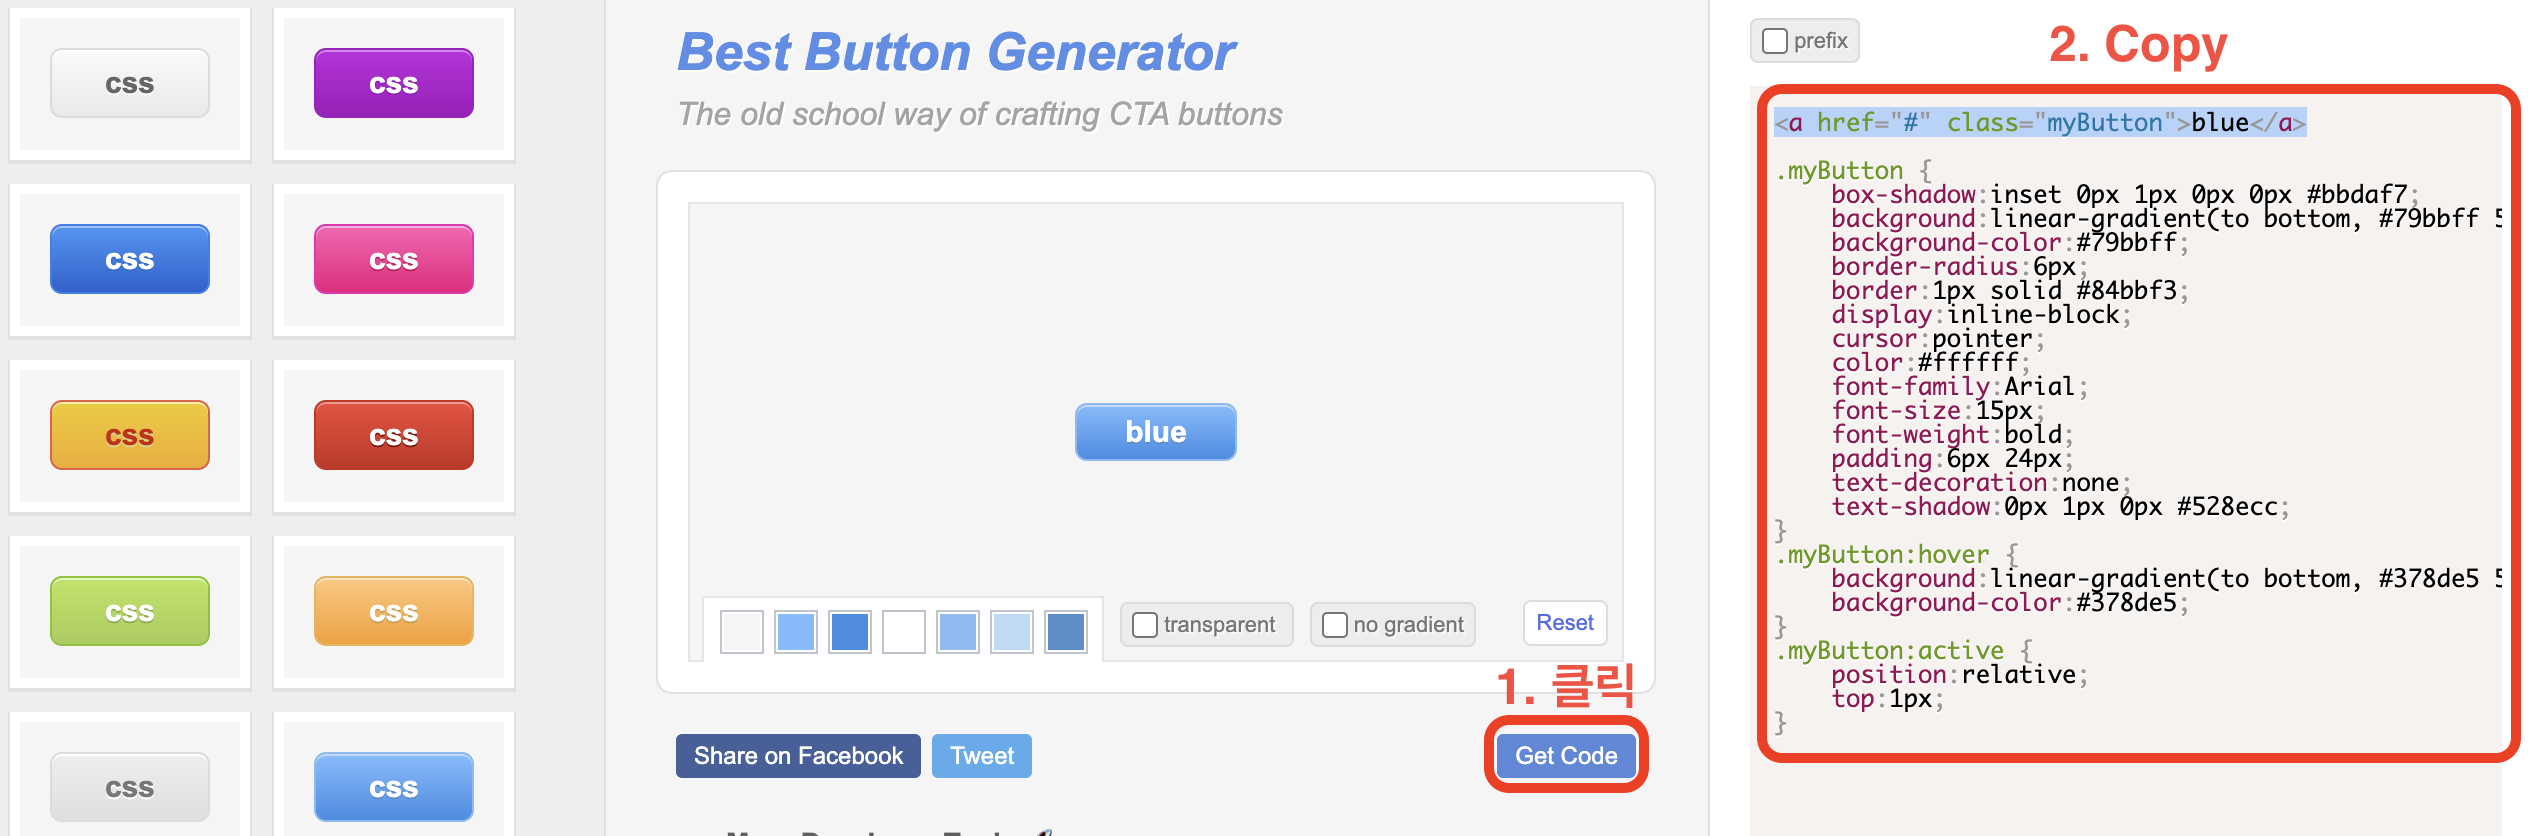 Best-Button-Generator